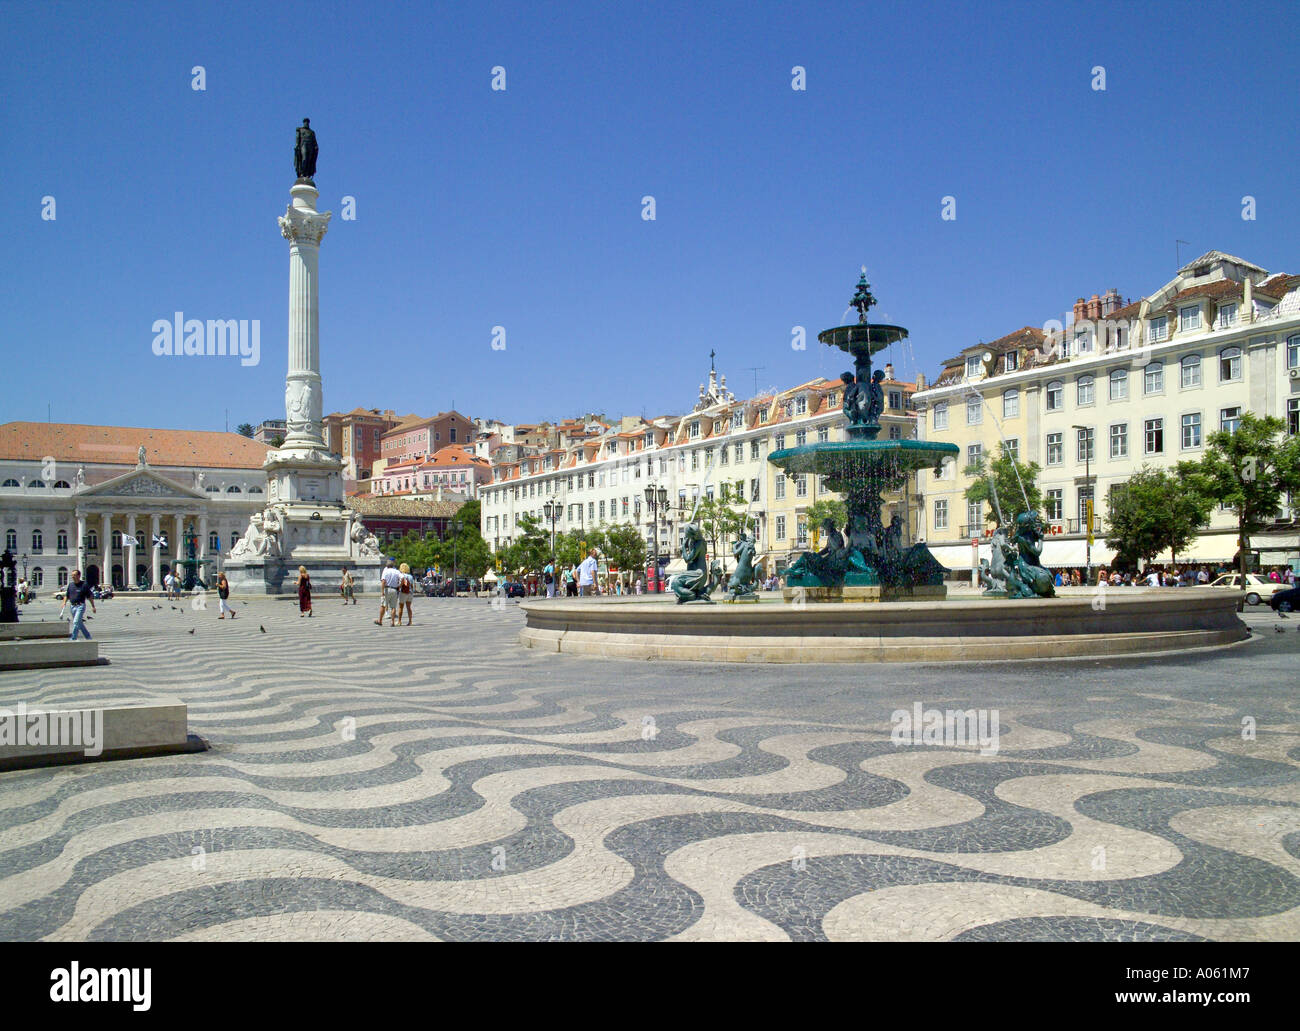 Portugal, Lisbon, Rossio Square Stock Photo